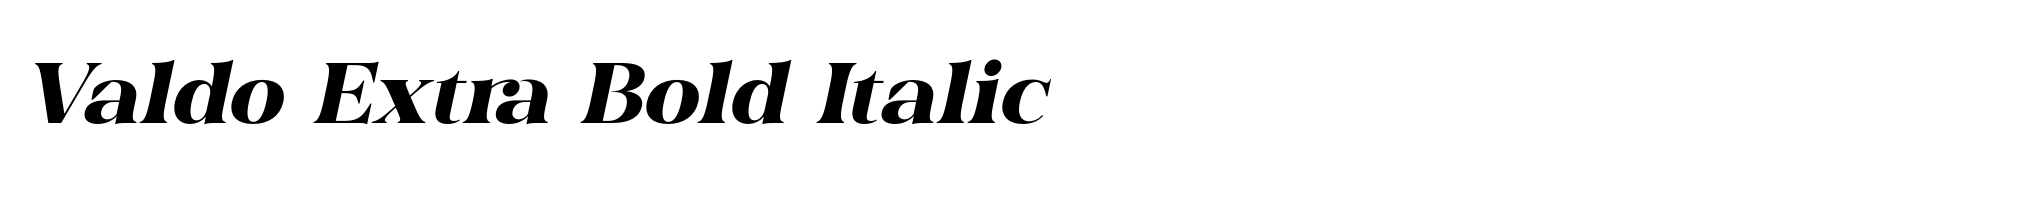 Valdo Extra Bold Italic image